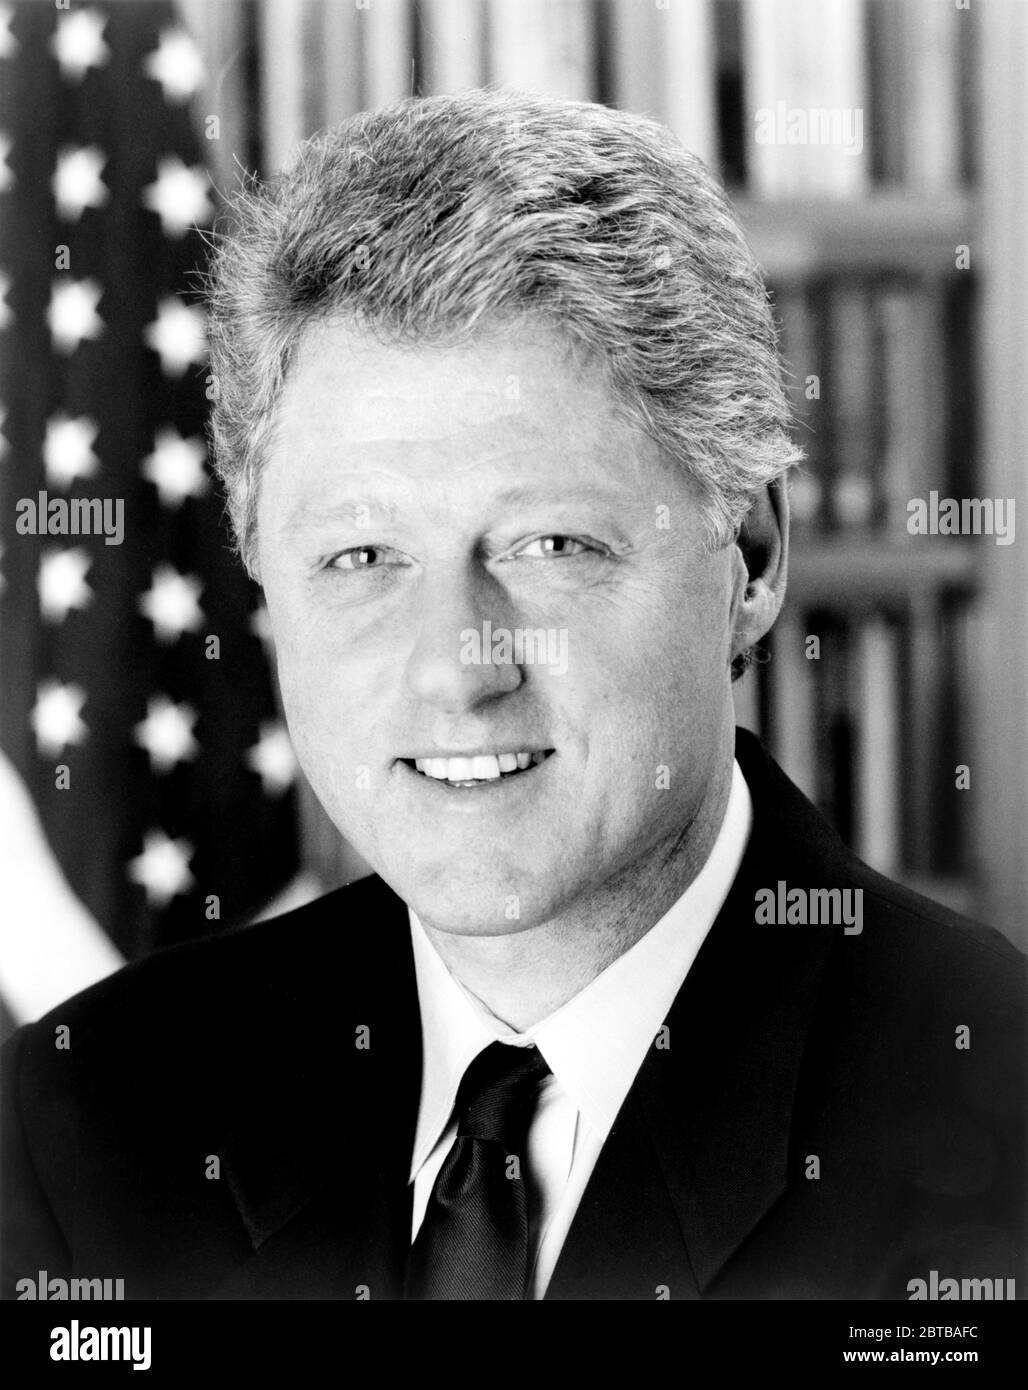 1993 , WASHINGTON , EE.UU. : William Jefferson BILL CLINTON , GCL (nacido William Jefferson Blythe III el 19 de agosto de 1946) fue el 42º Presidente de los Estados Unidos, sirviendo desde 1993 hasta 2001. Foto oficial de la Casa Blanca Oficina de Prensa - Presidente della Repubblica - USA - ritratto - retrato - cravatta - corbata - collar - colletto - ESTADOS UNIDOS - STATI UNITI - bandiera - bandera - bandiere - sonrisa - sorriso --- Archivio GBB Foto de stock